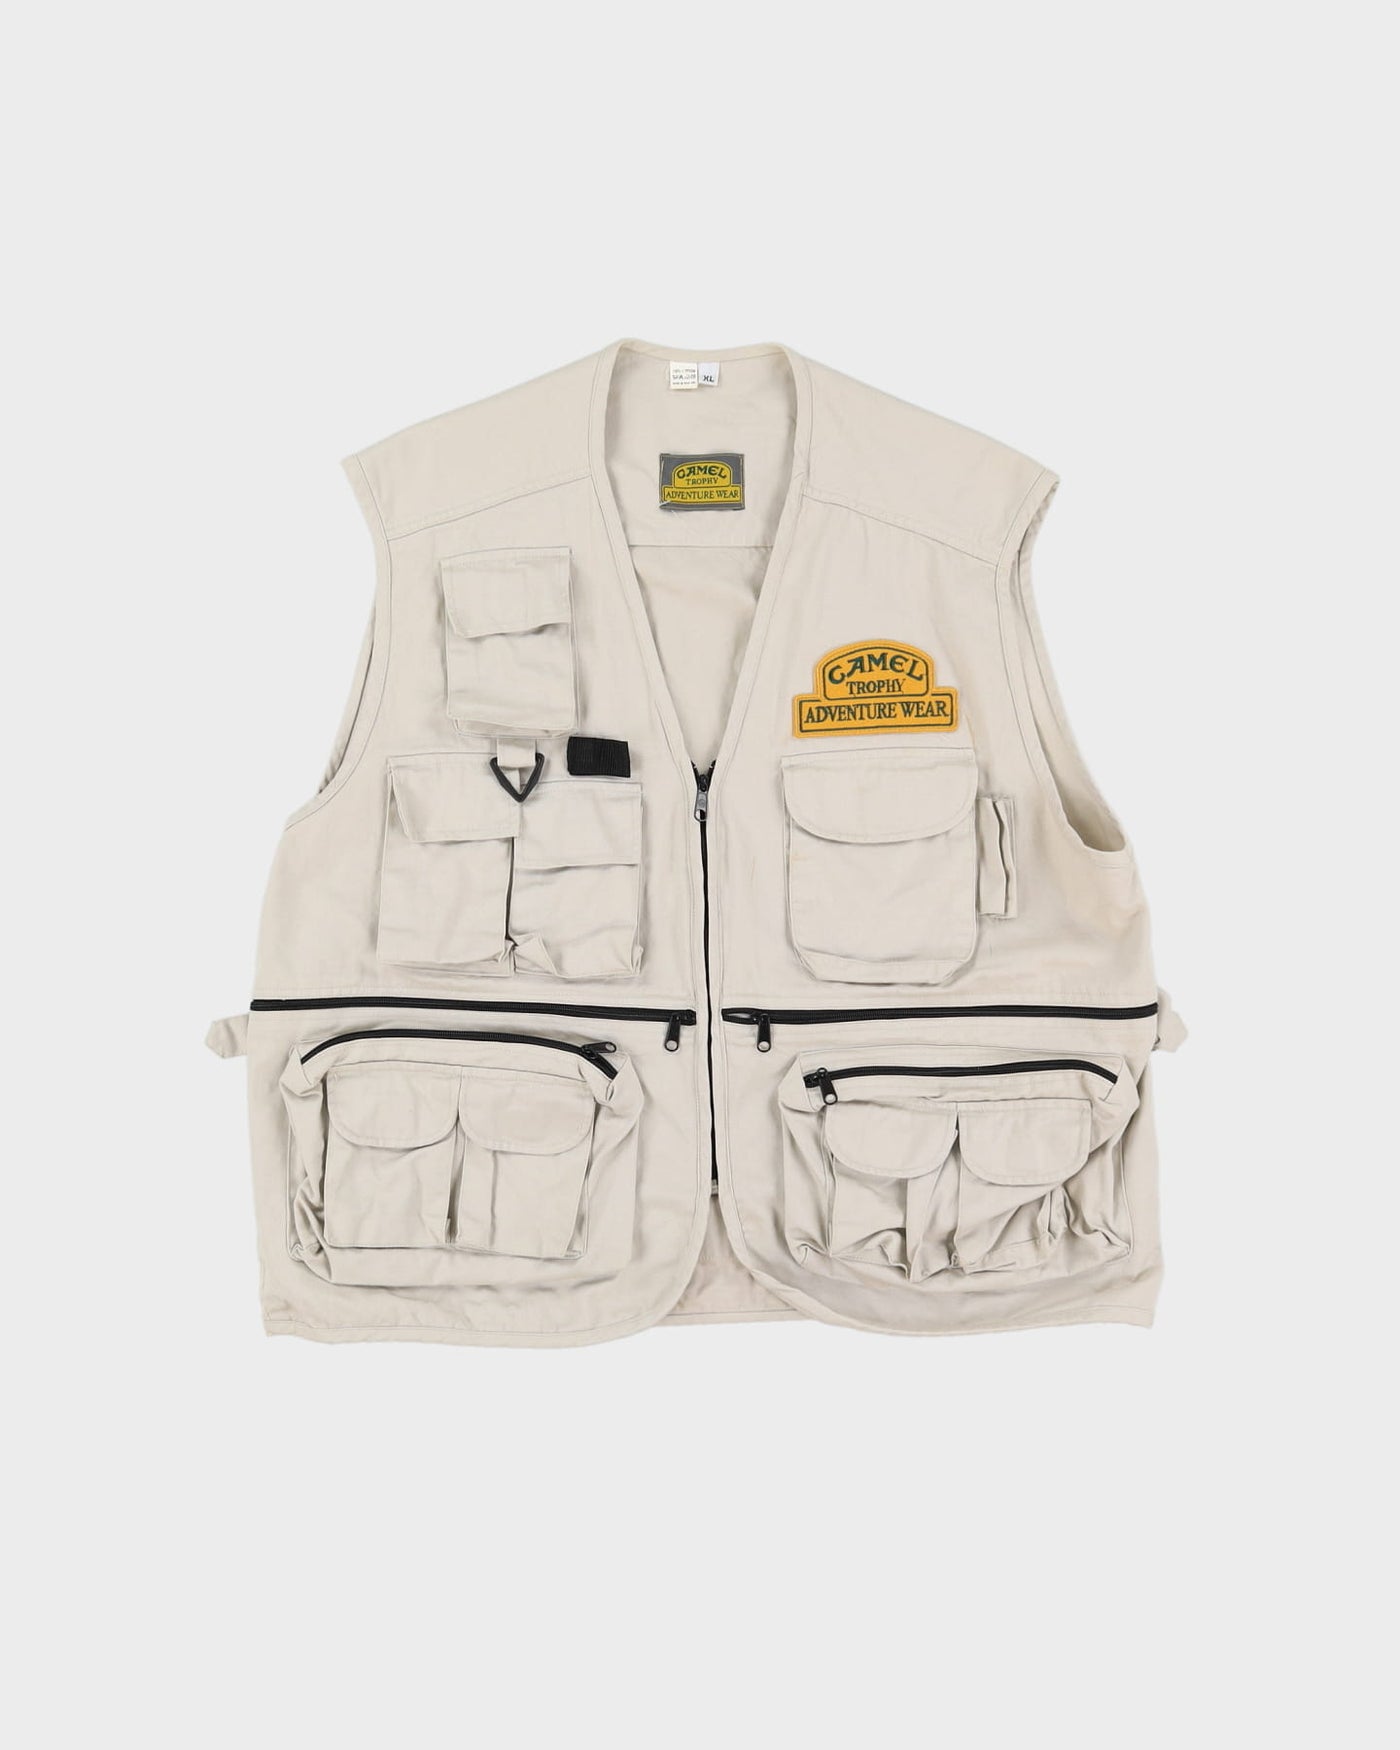 Vintage 90s Camel Trophy Wear Beige Tactical Vest / Sleeveless Gilet Jacket - XL